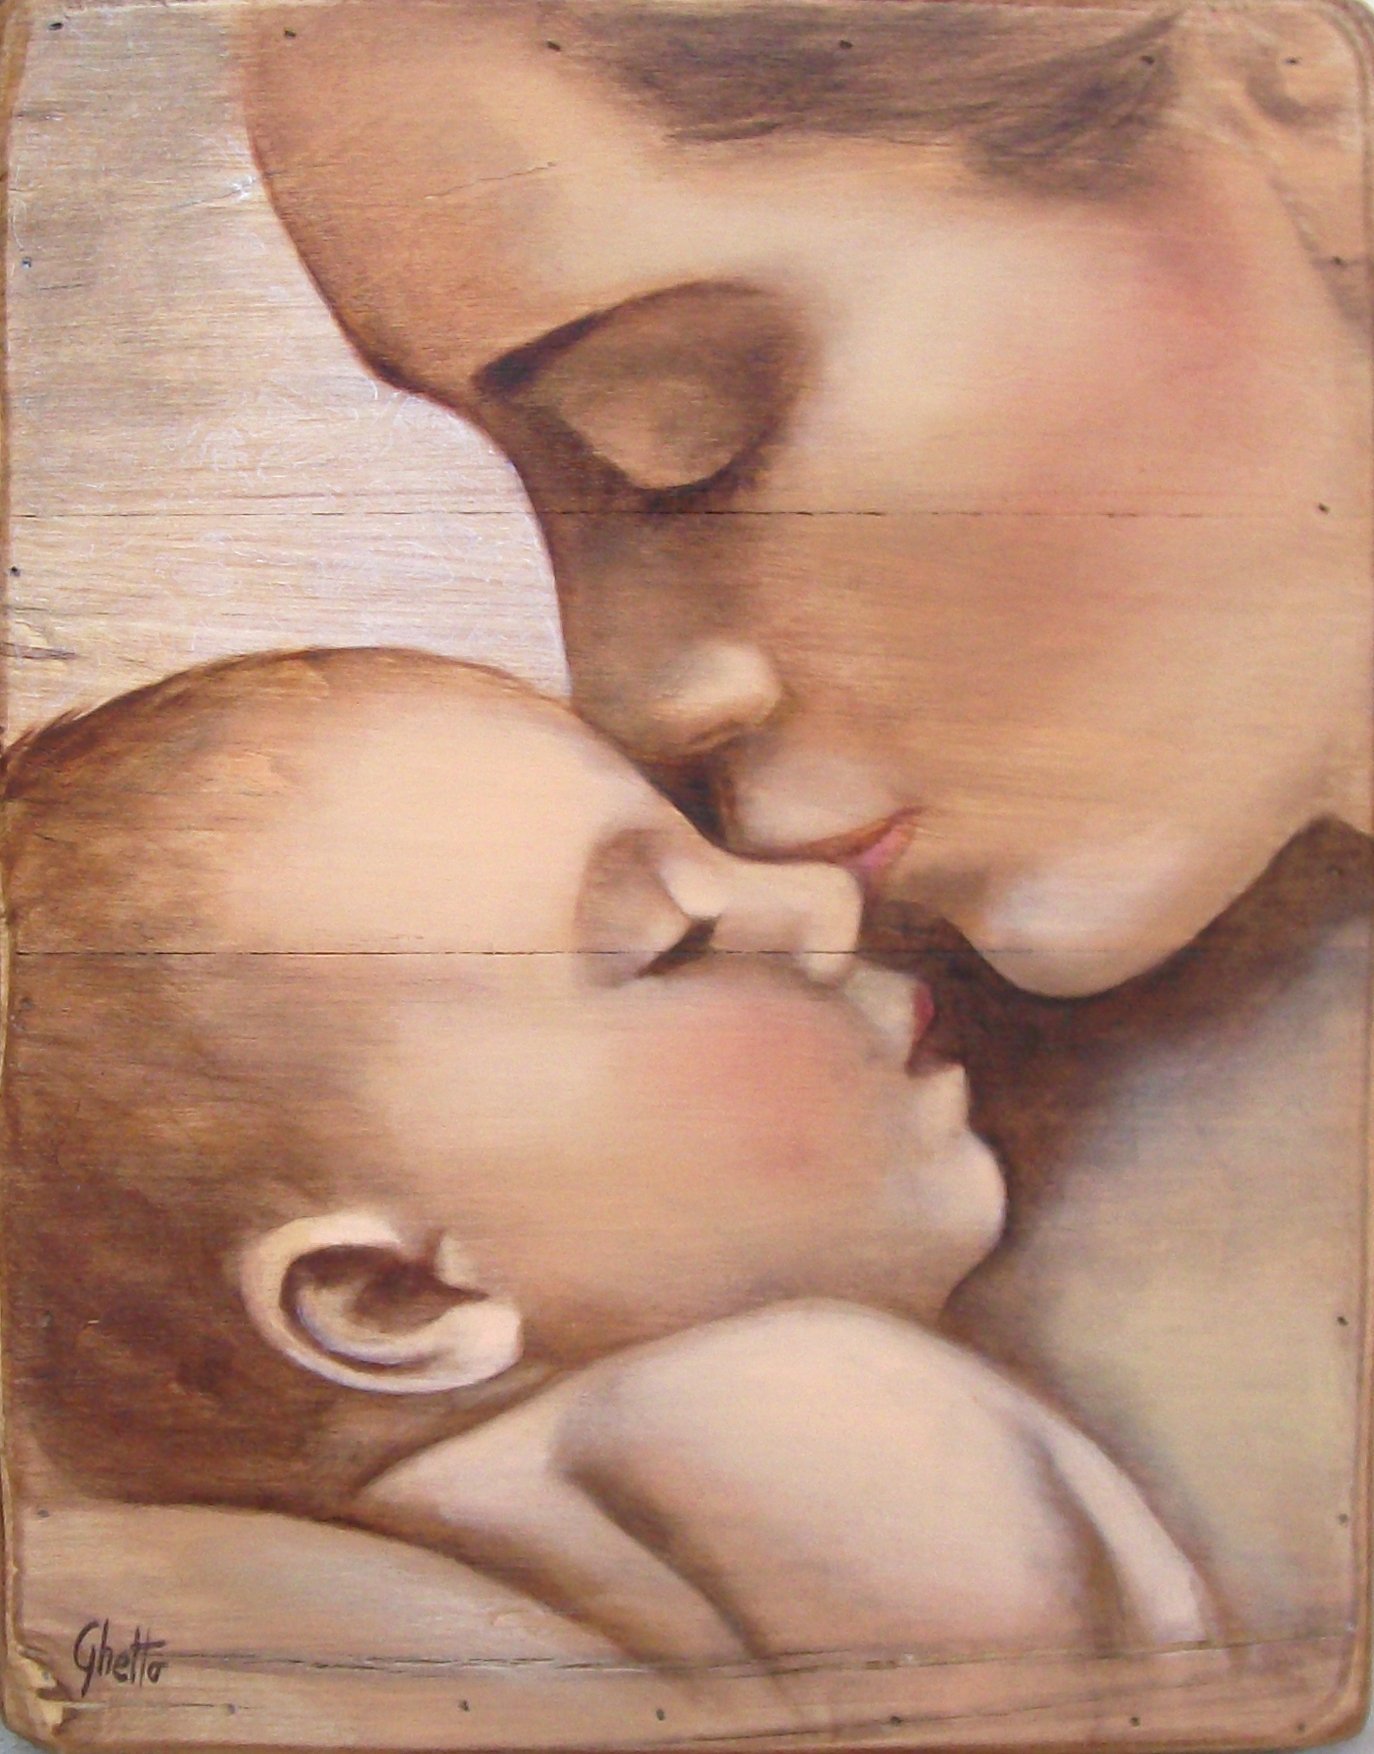 Картина день мам. "Мать и дитя", Жук, 1906. Claudia Tremblay картины мать и дитя. Мама с ребенком рисунок. Мама с ребенком живопись.